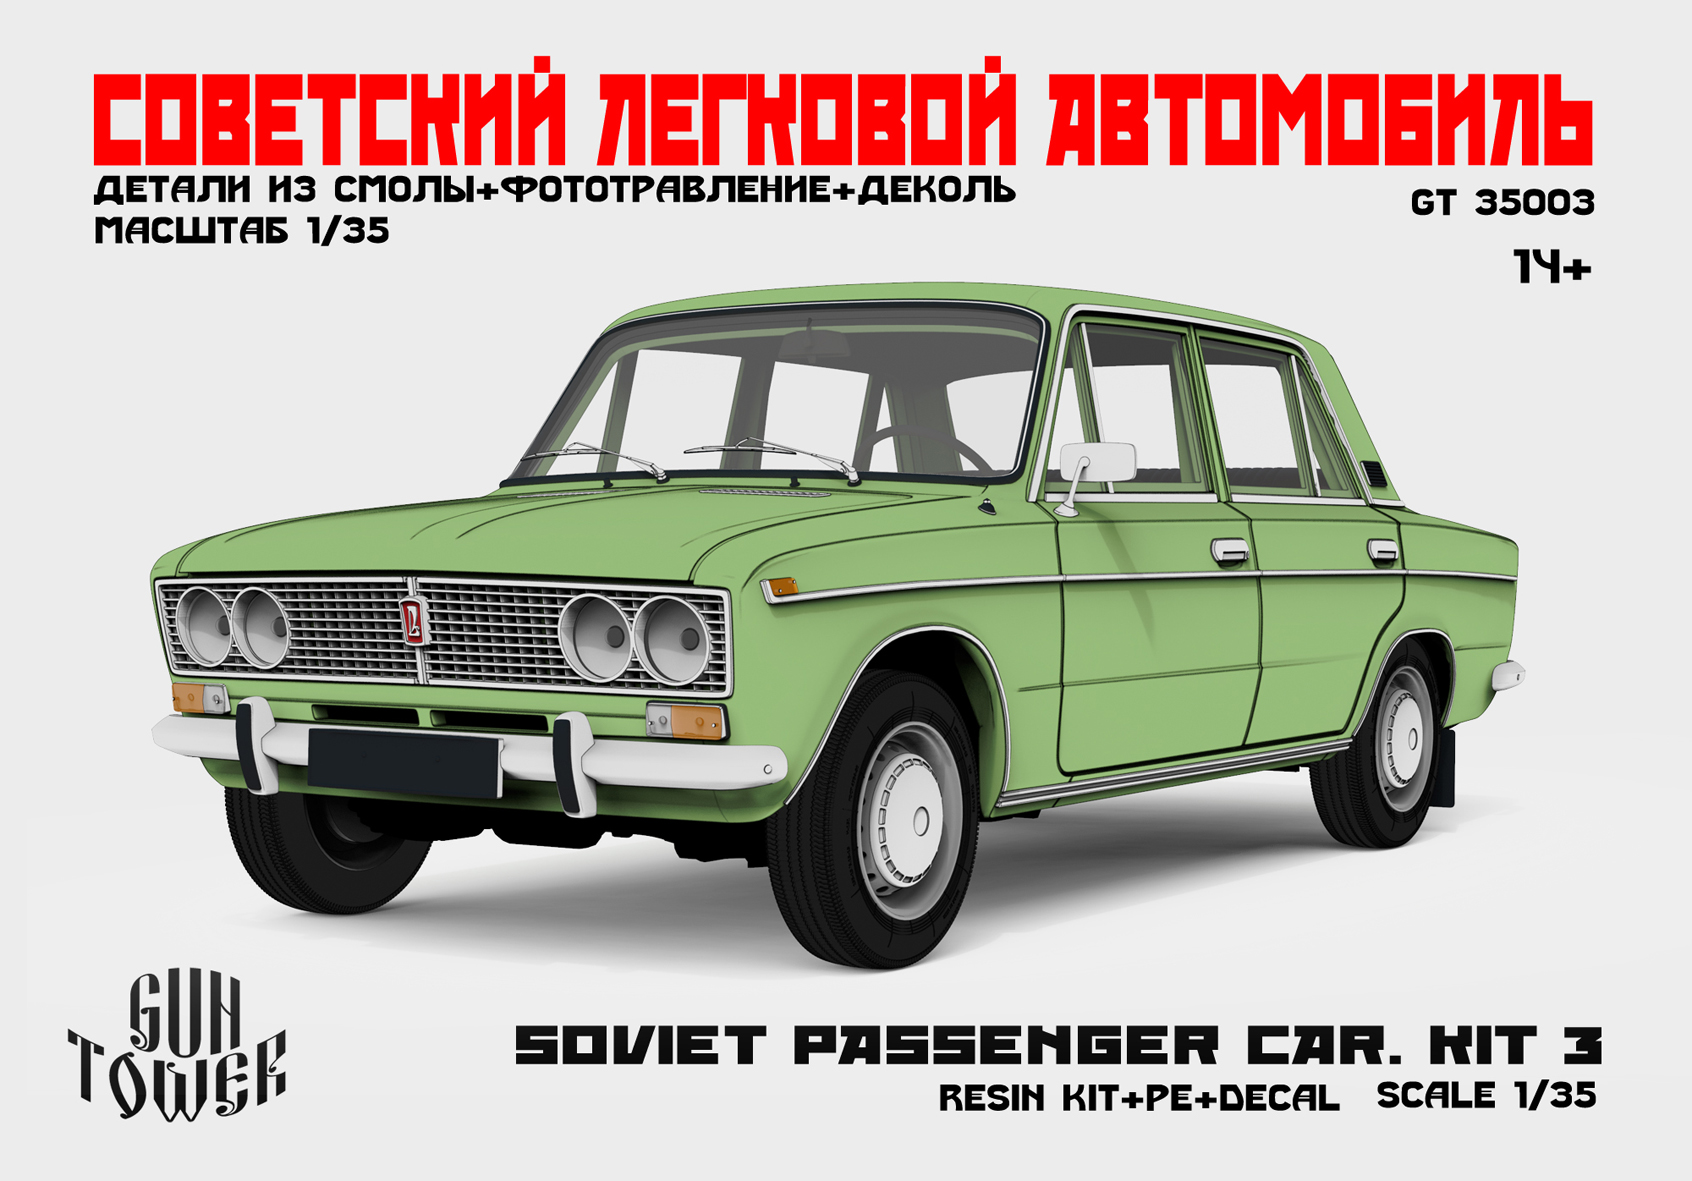 Soviet passenger car.Kit 3 (2103)